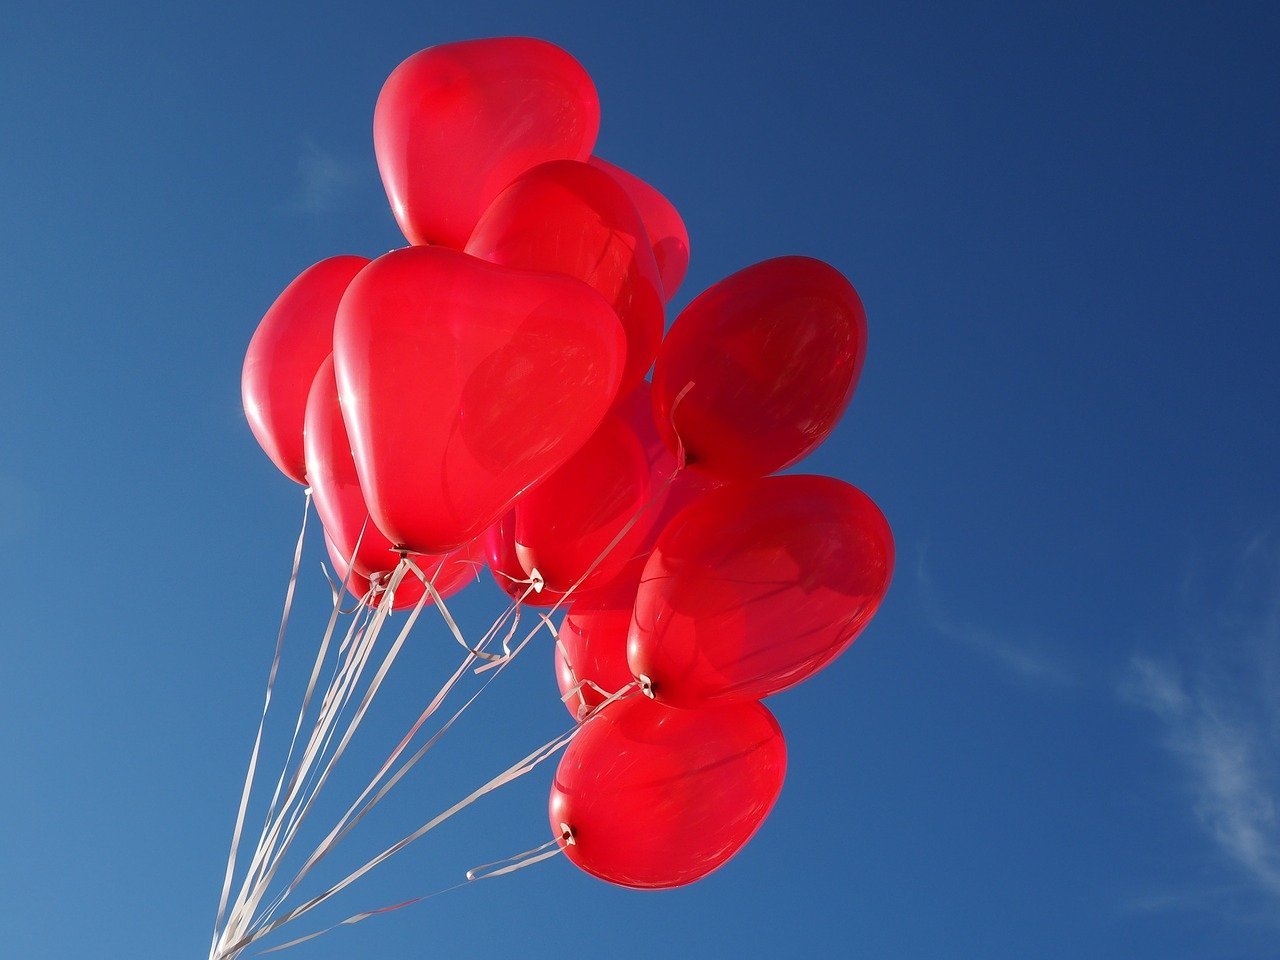 Милашка в красных трусиках играет с воздушными шариками